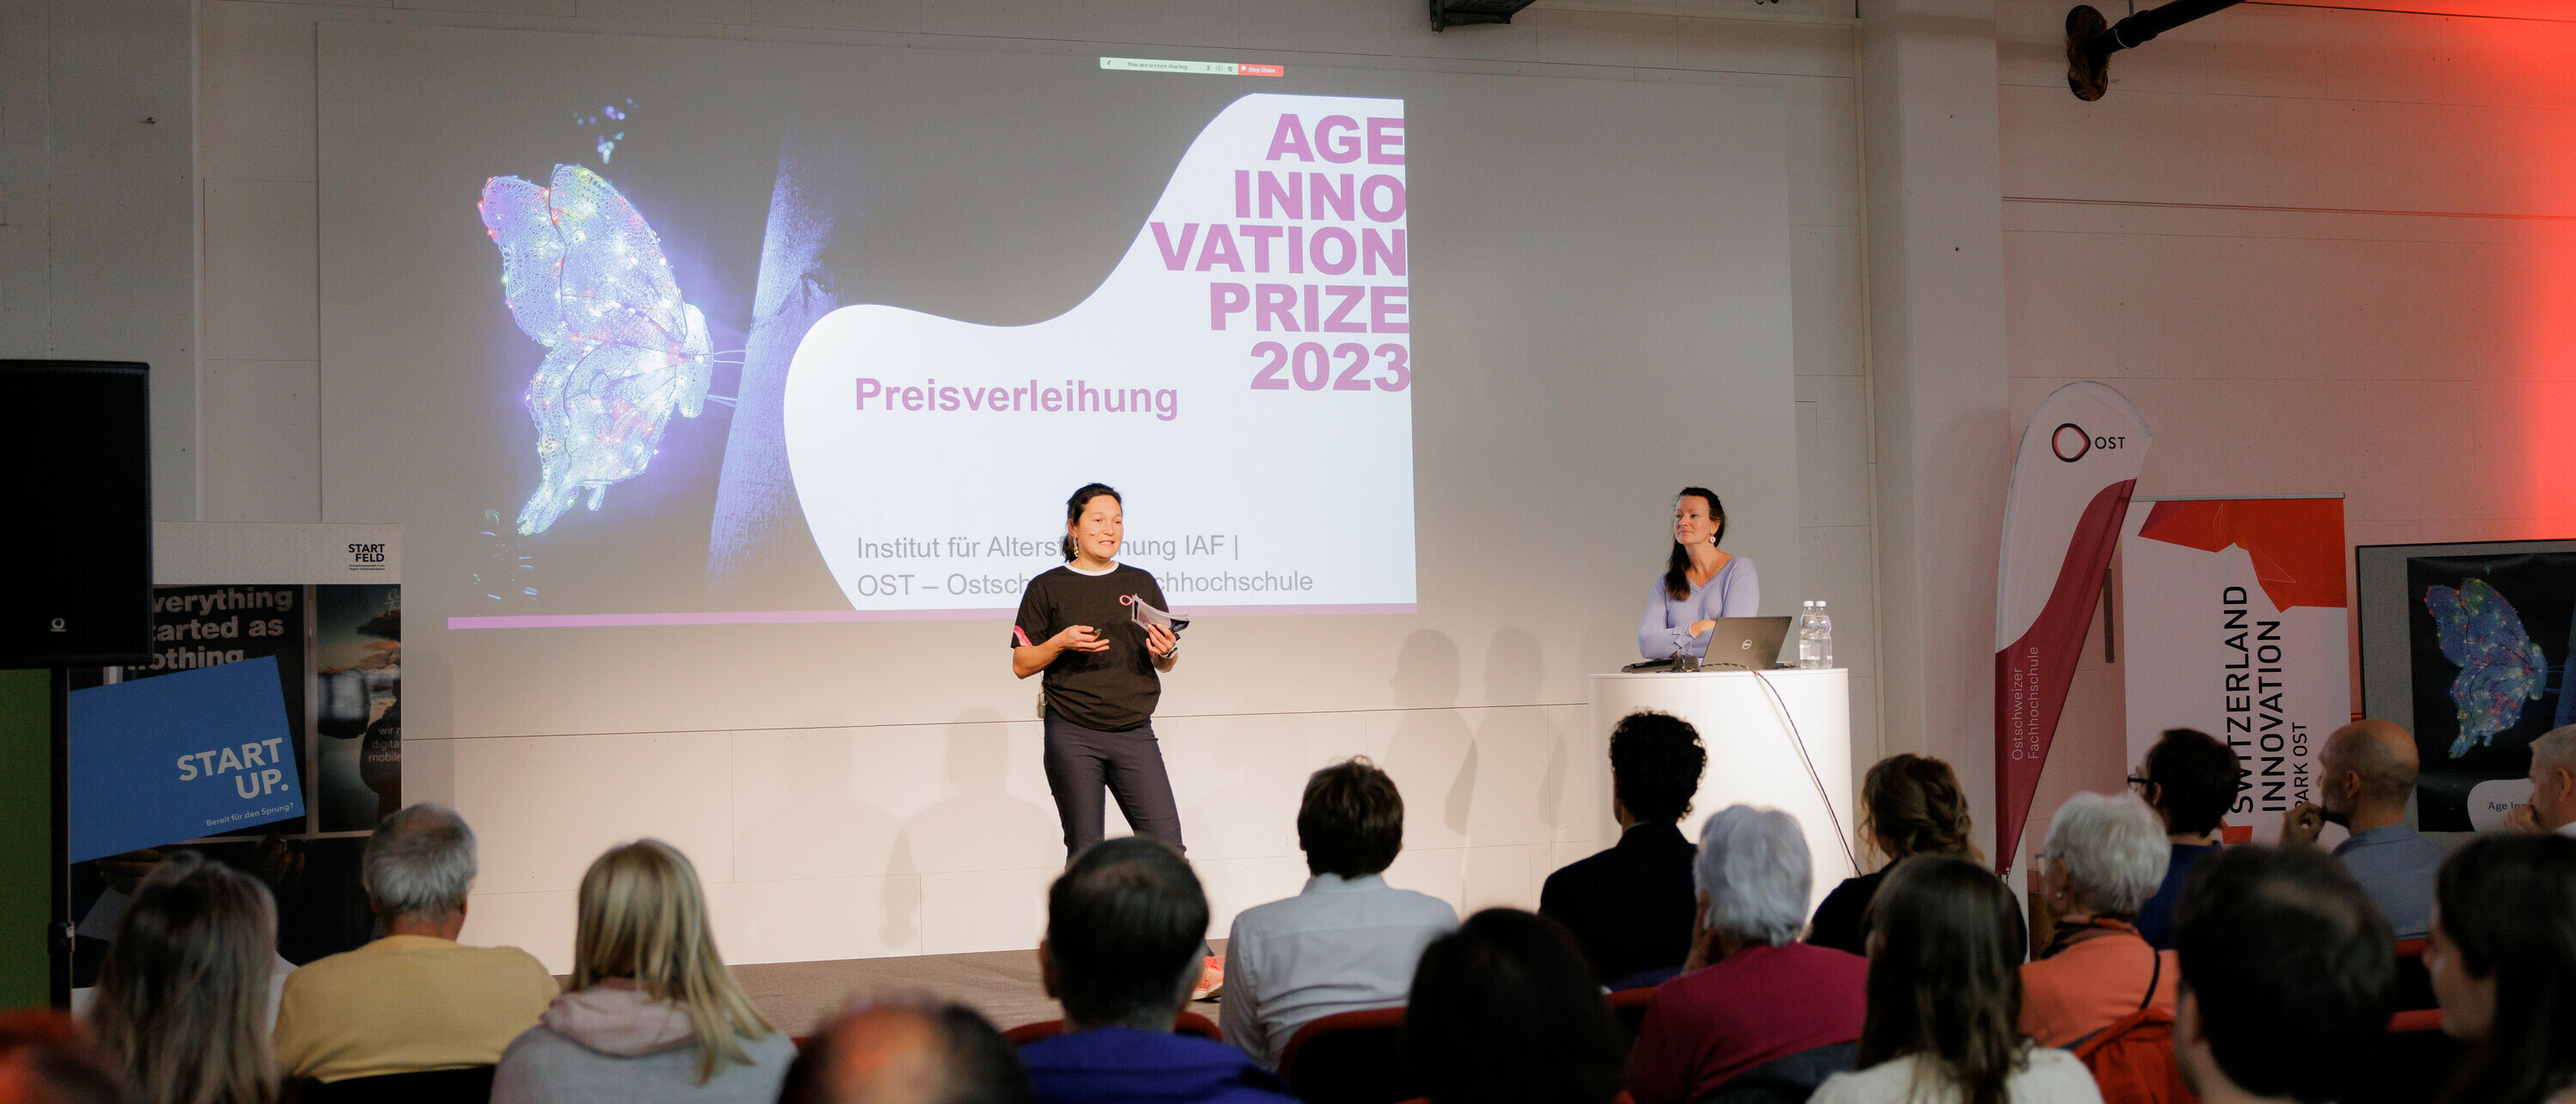 Award Ceremony Age Innovation Prize 2023